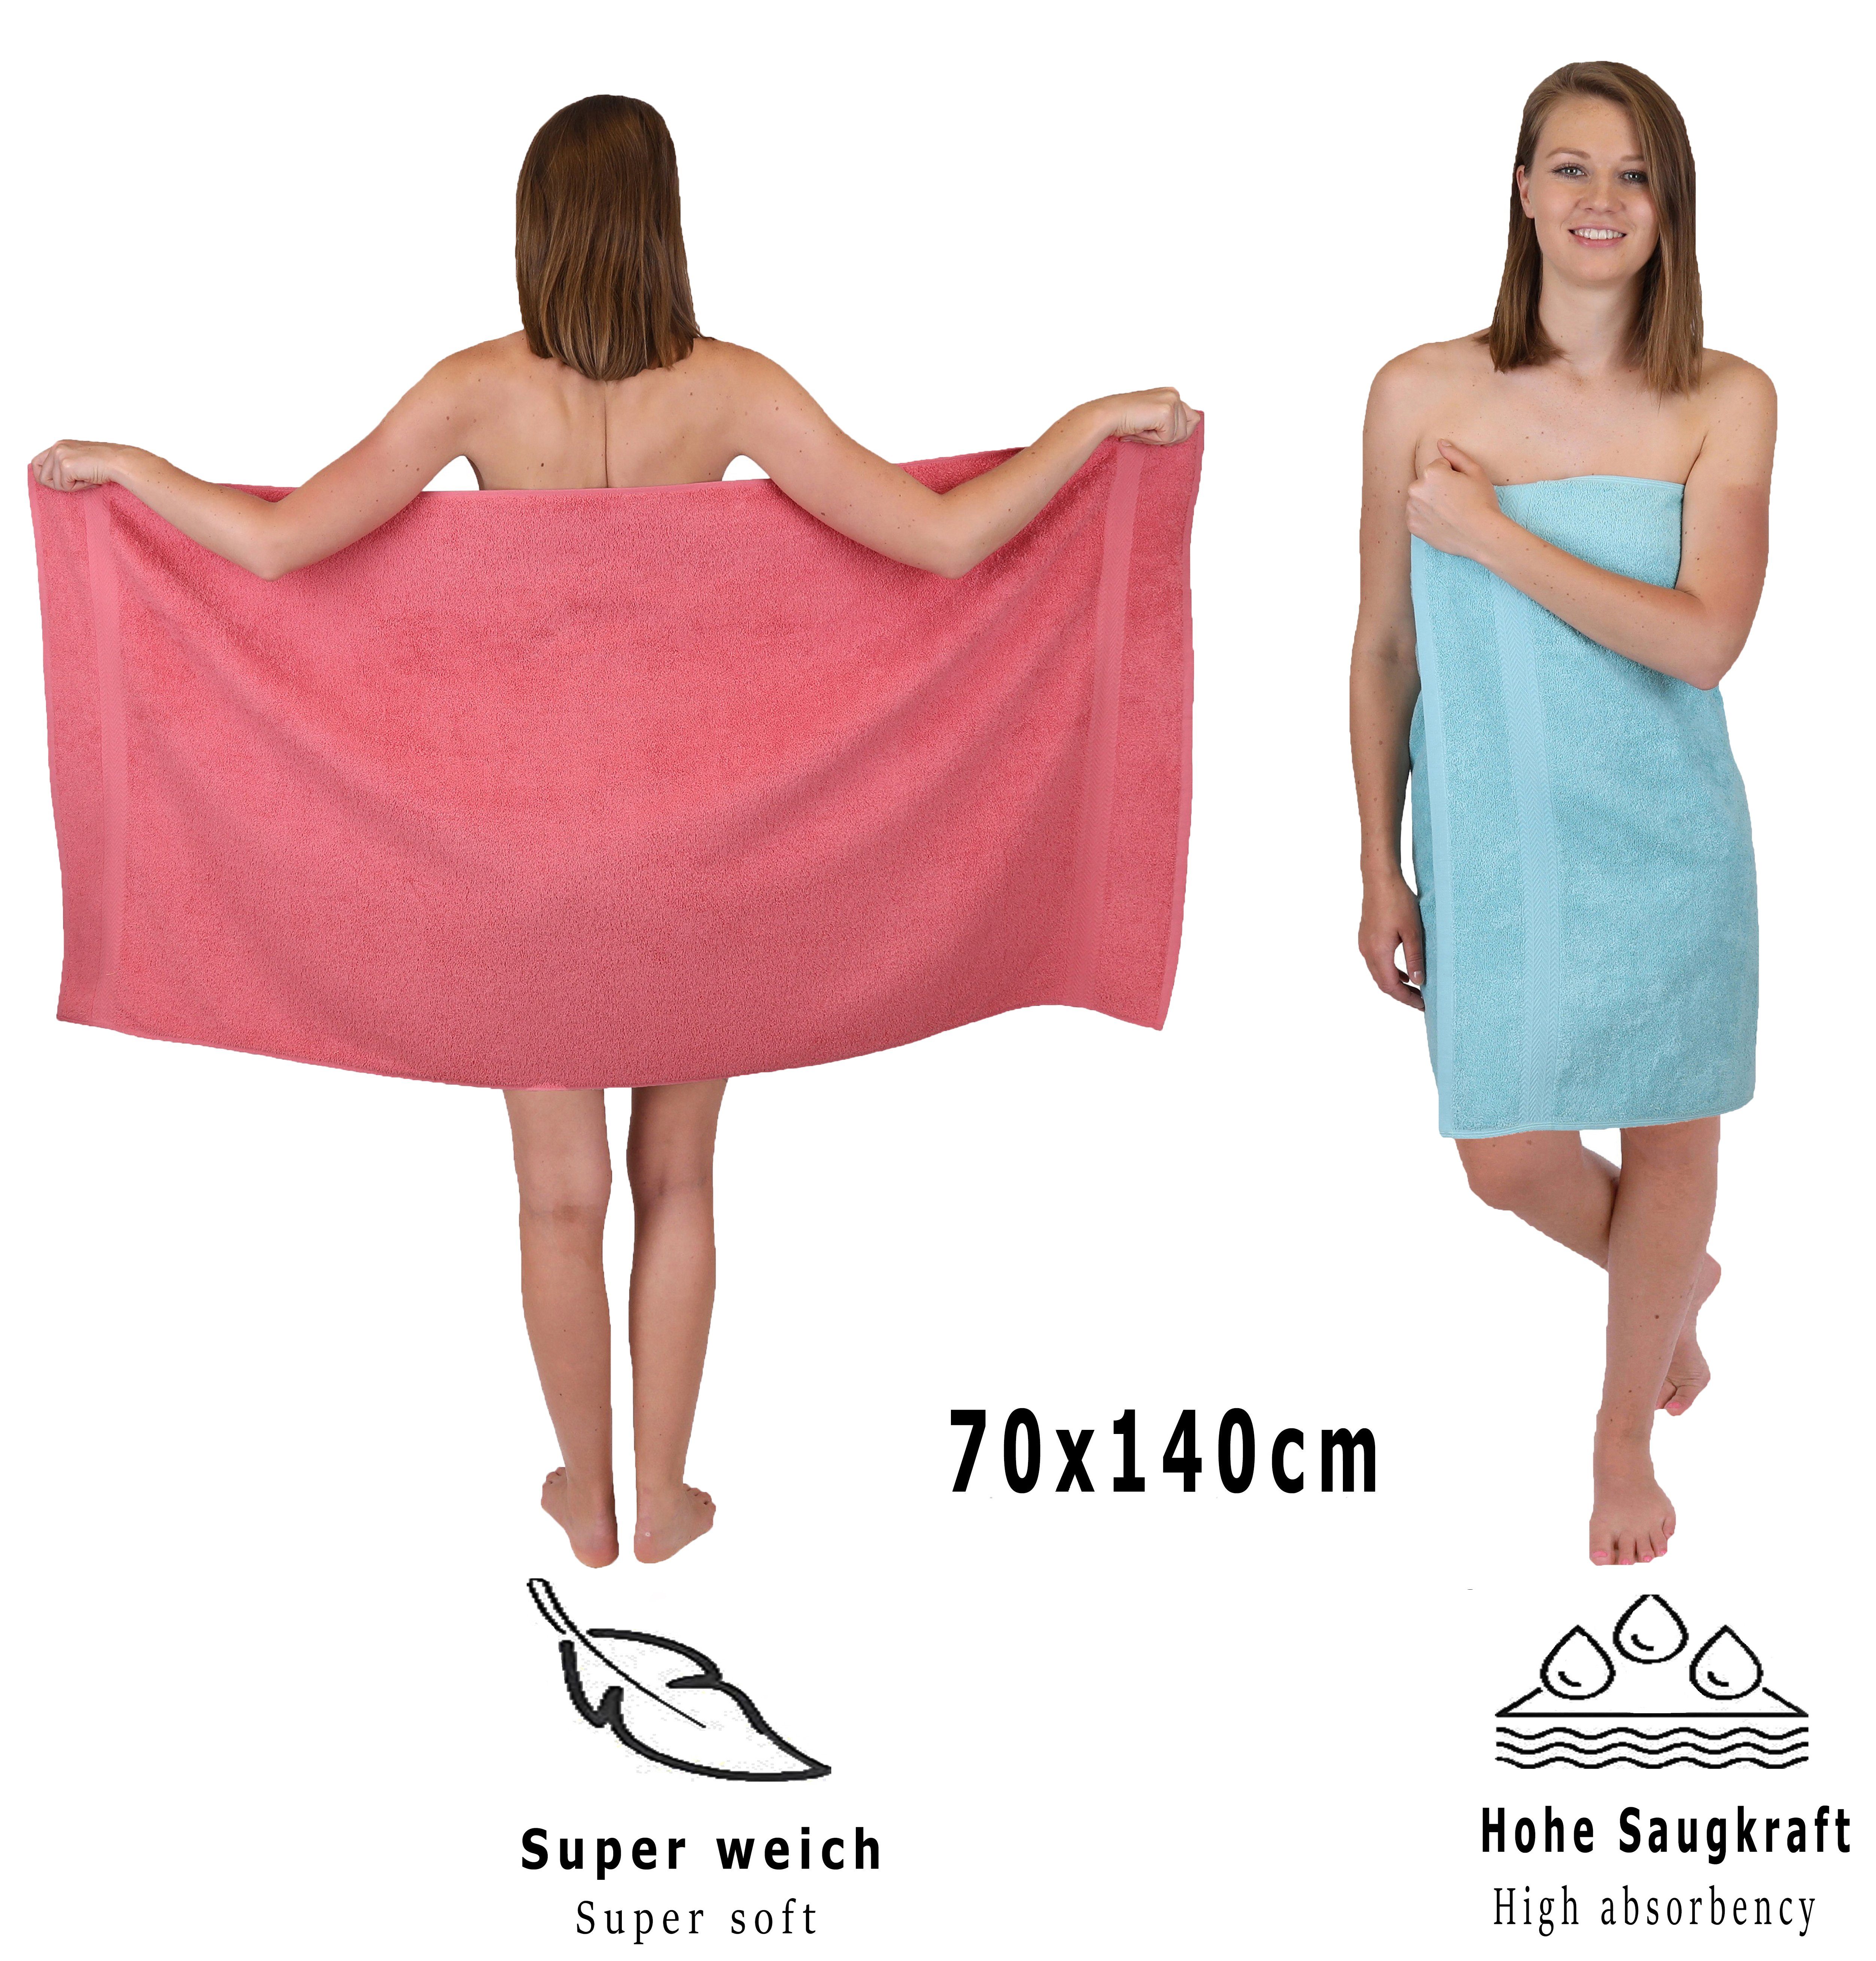 Baumwolle, Premium Himbeere/Ocean, 12-TLG. (12-tlg) Handtuch Handtuch Set Betz Set